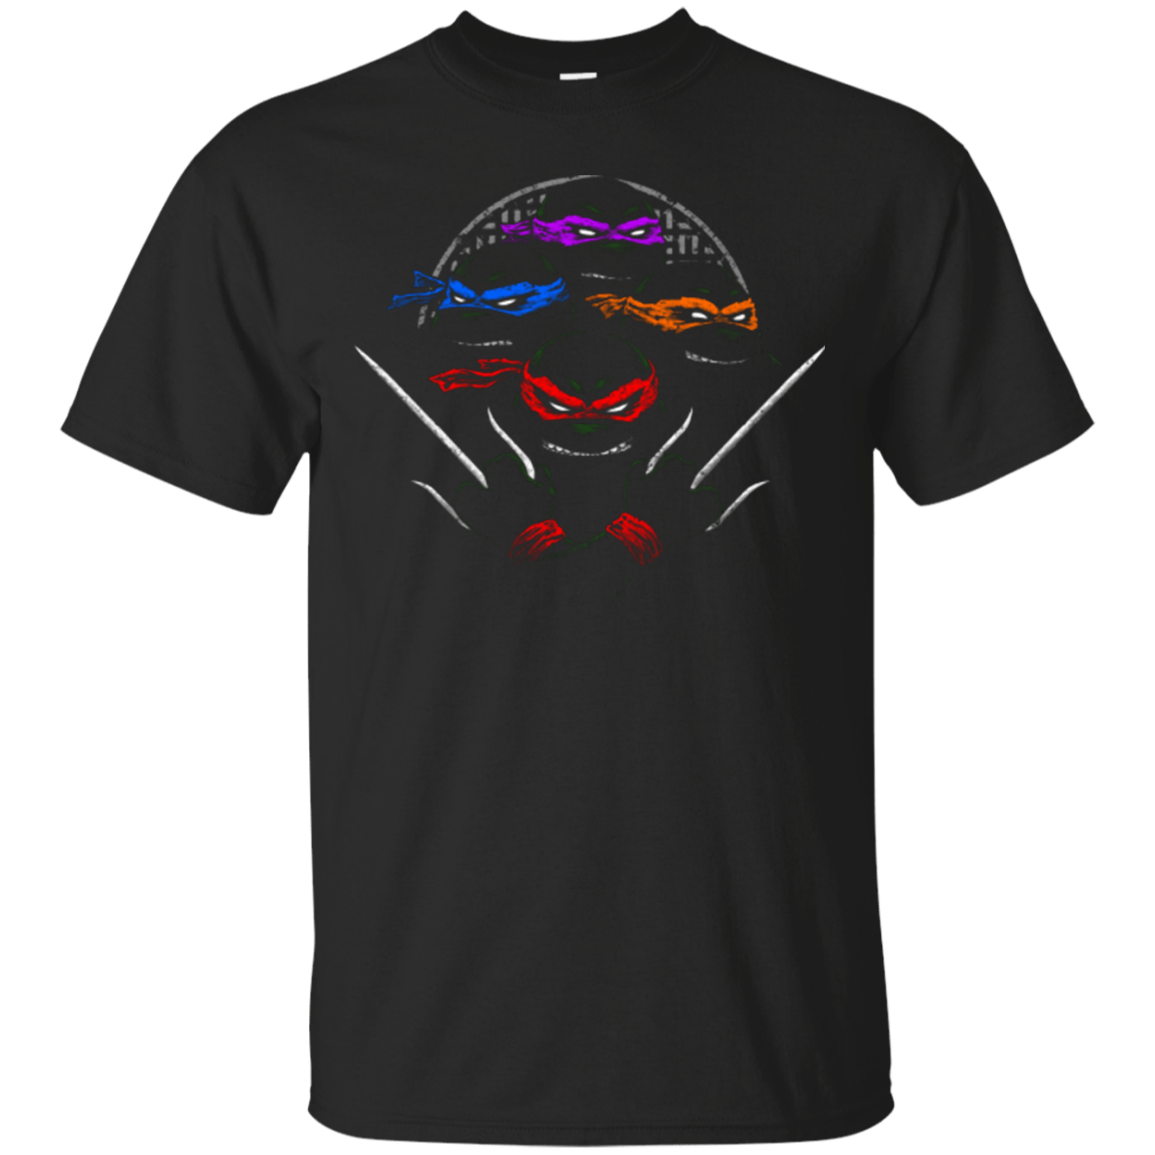 T-Shirts Black / Small Mutant Ninja Brothers T-Shirt